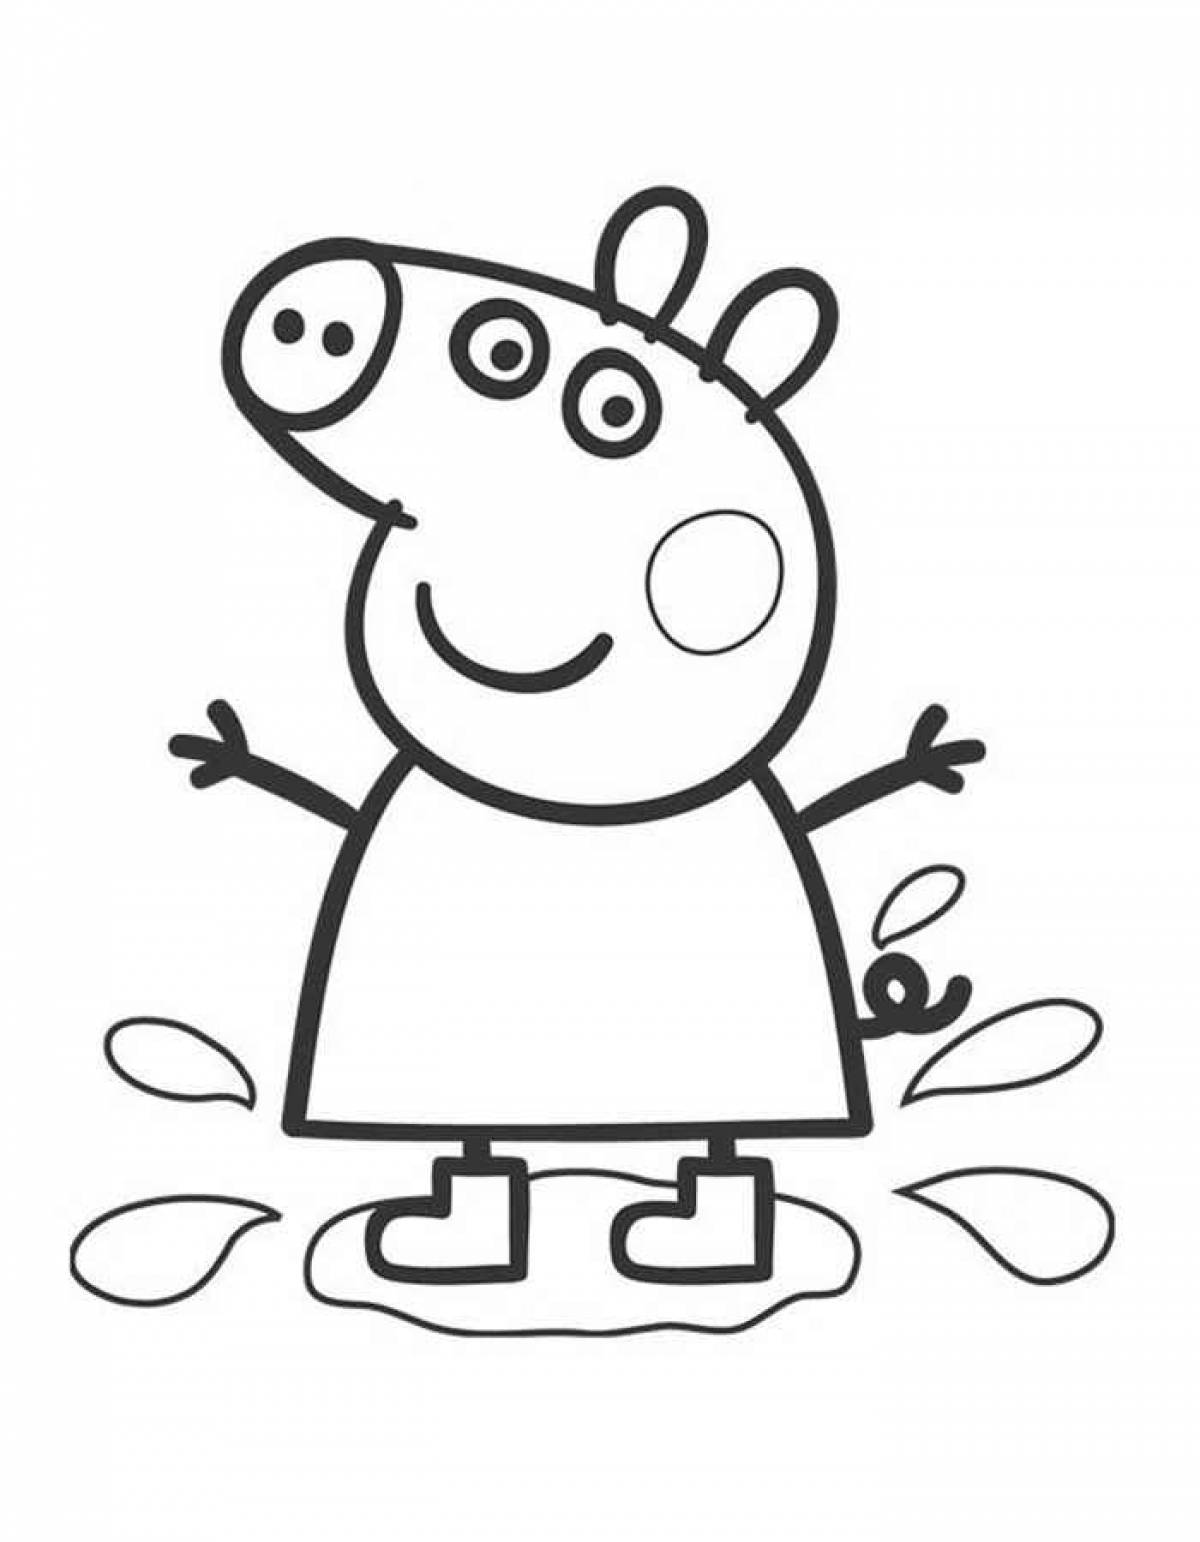 Peppa pig coloring book